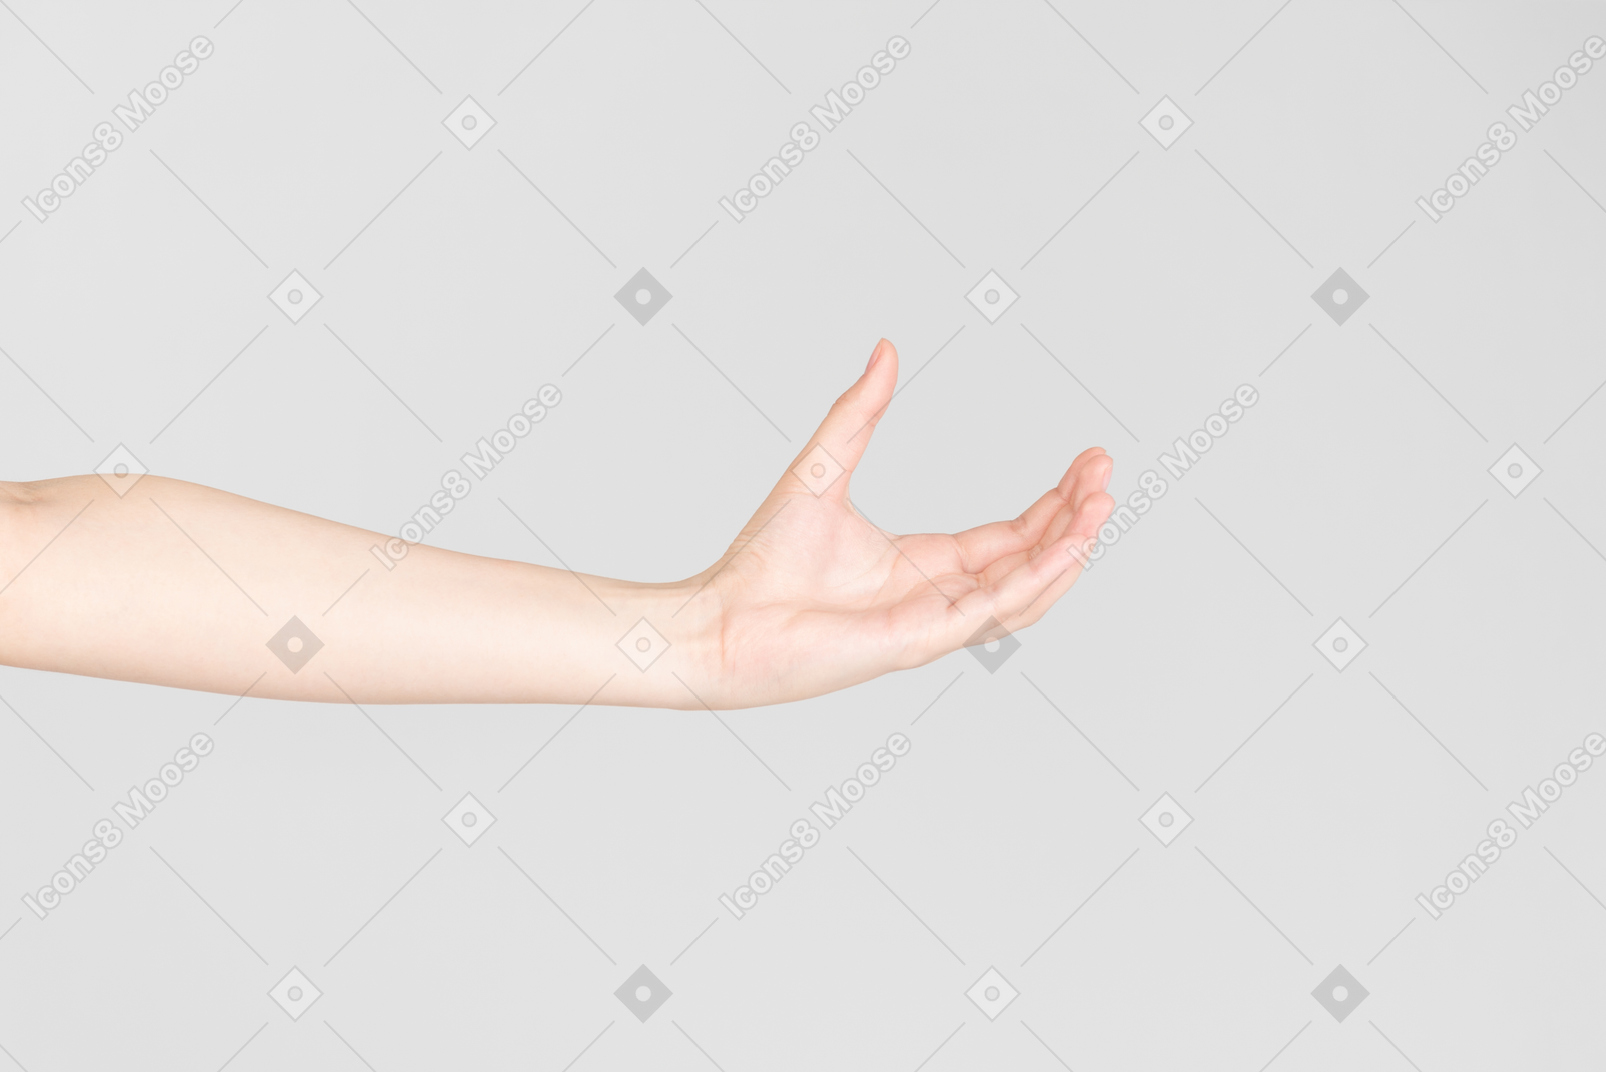 Olhar lateral da mão feminina com a mão aberta